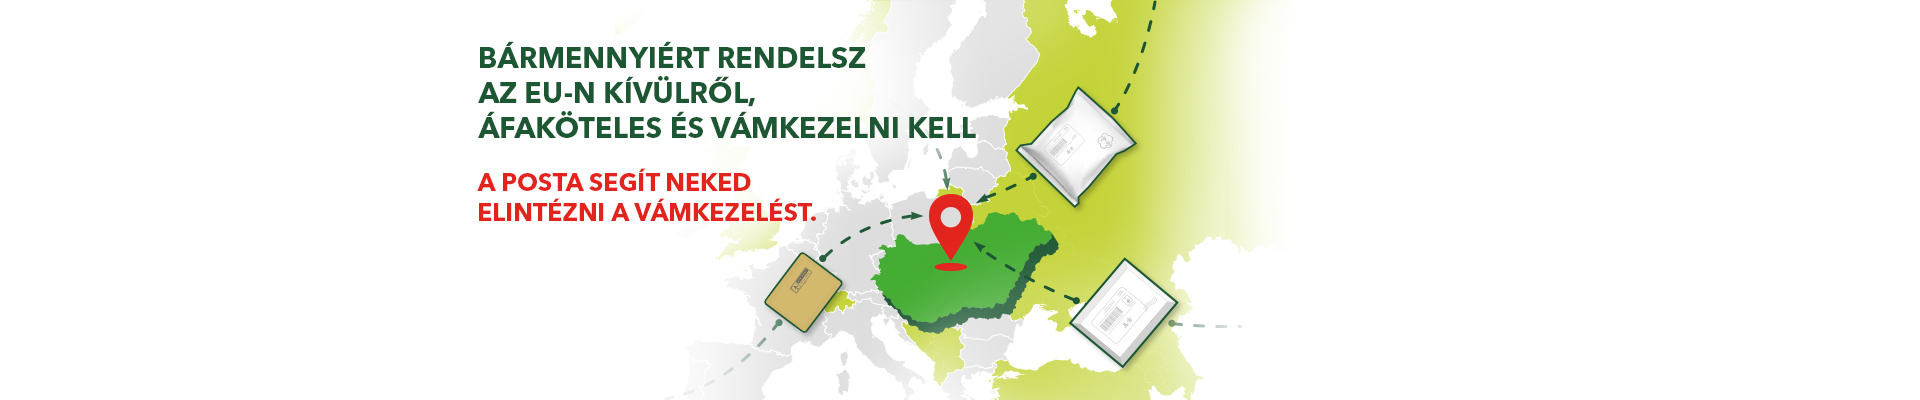 A képen egy Magyarországot ábrázoló kép látható, ahova csomagok érkeznek. A képen látható felirat a következő: Bármennyiért rendelsz az eu-n kívülről, áfaköteles és vámkezelni kell. A Posta segít neked elintézni a vámkezelést.